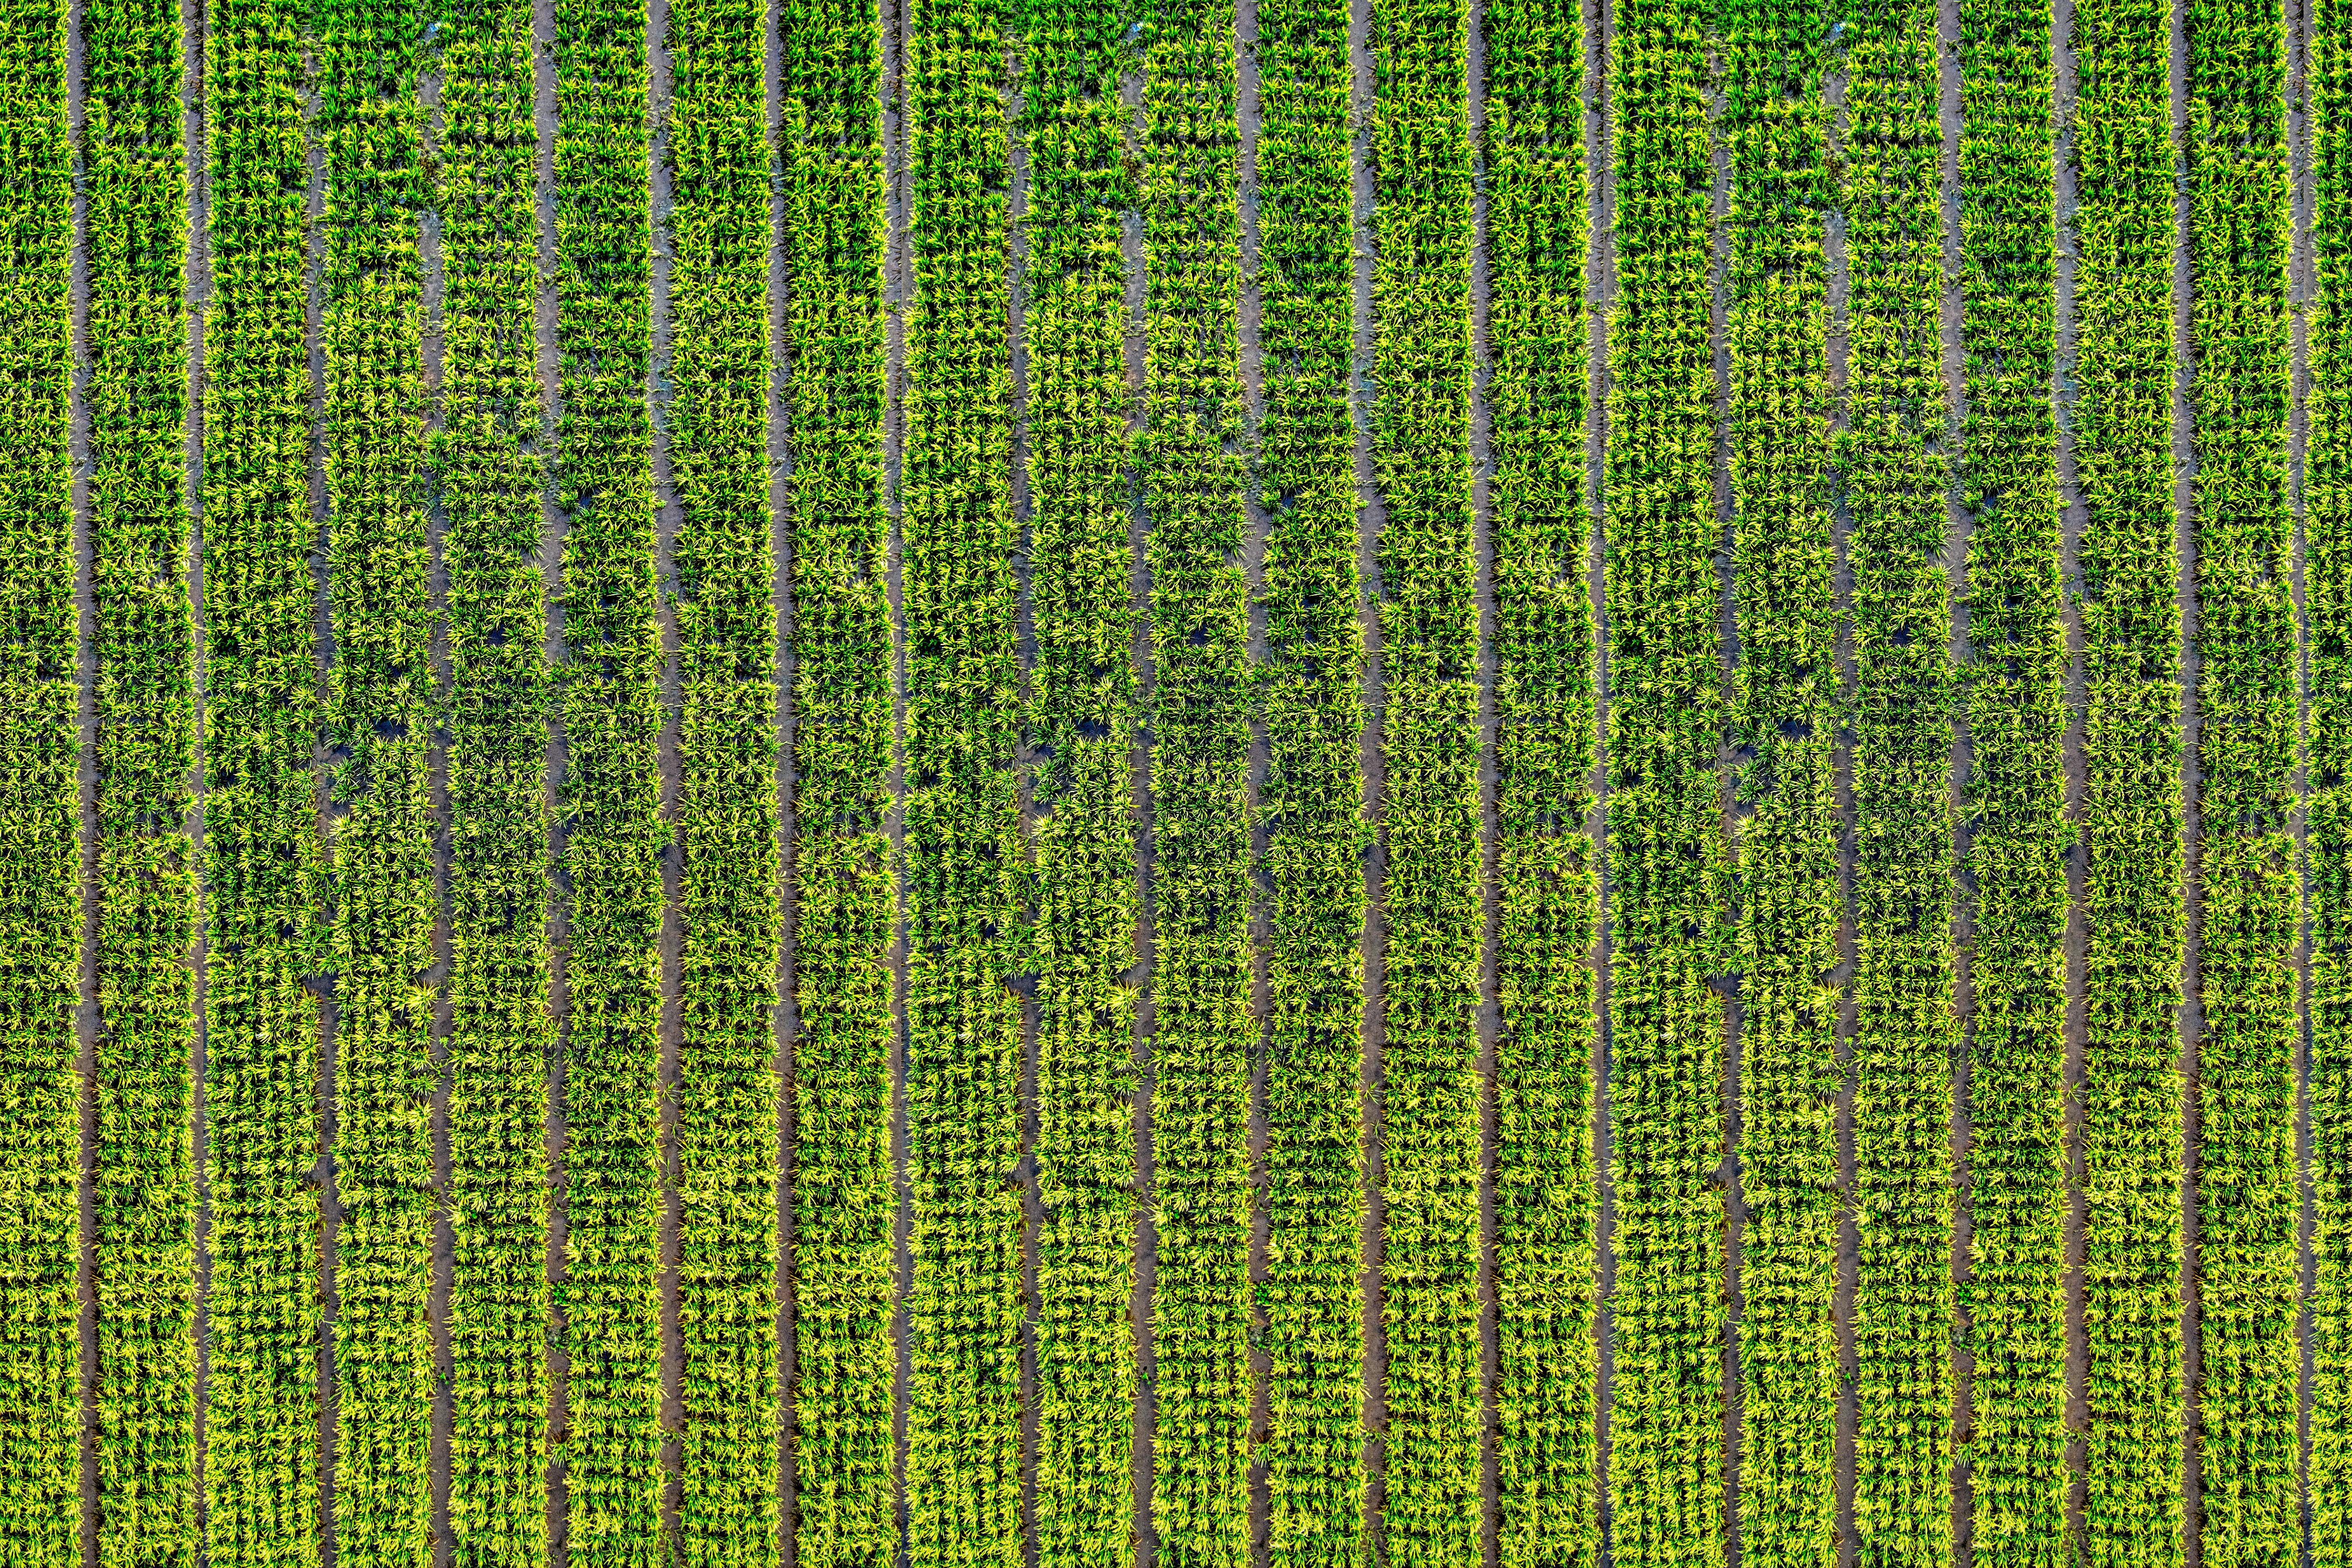 Aerial View of Crop Field